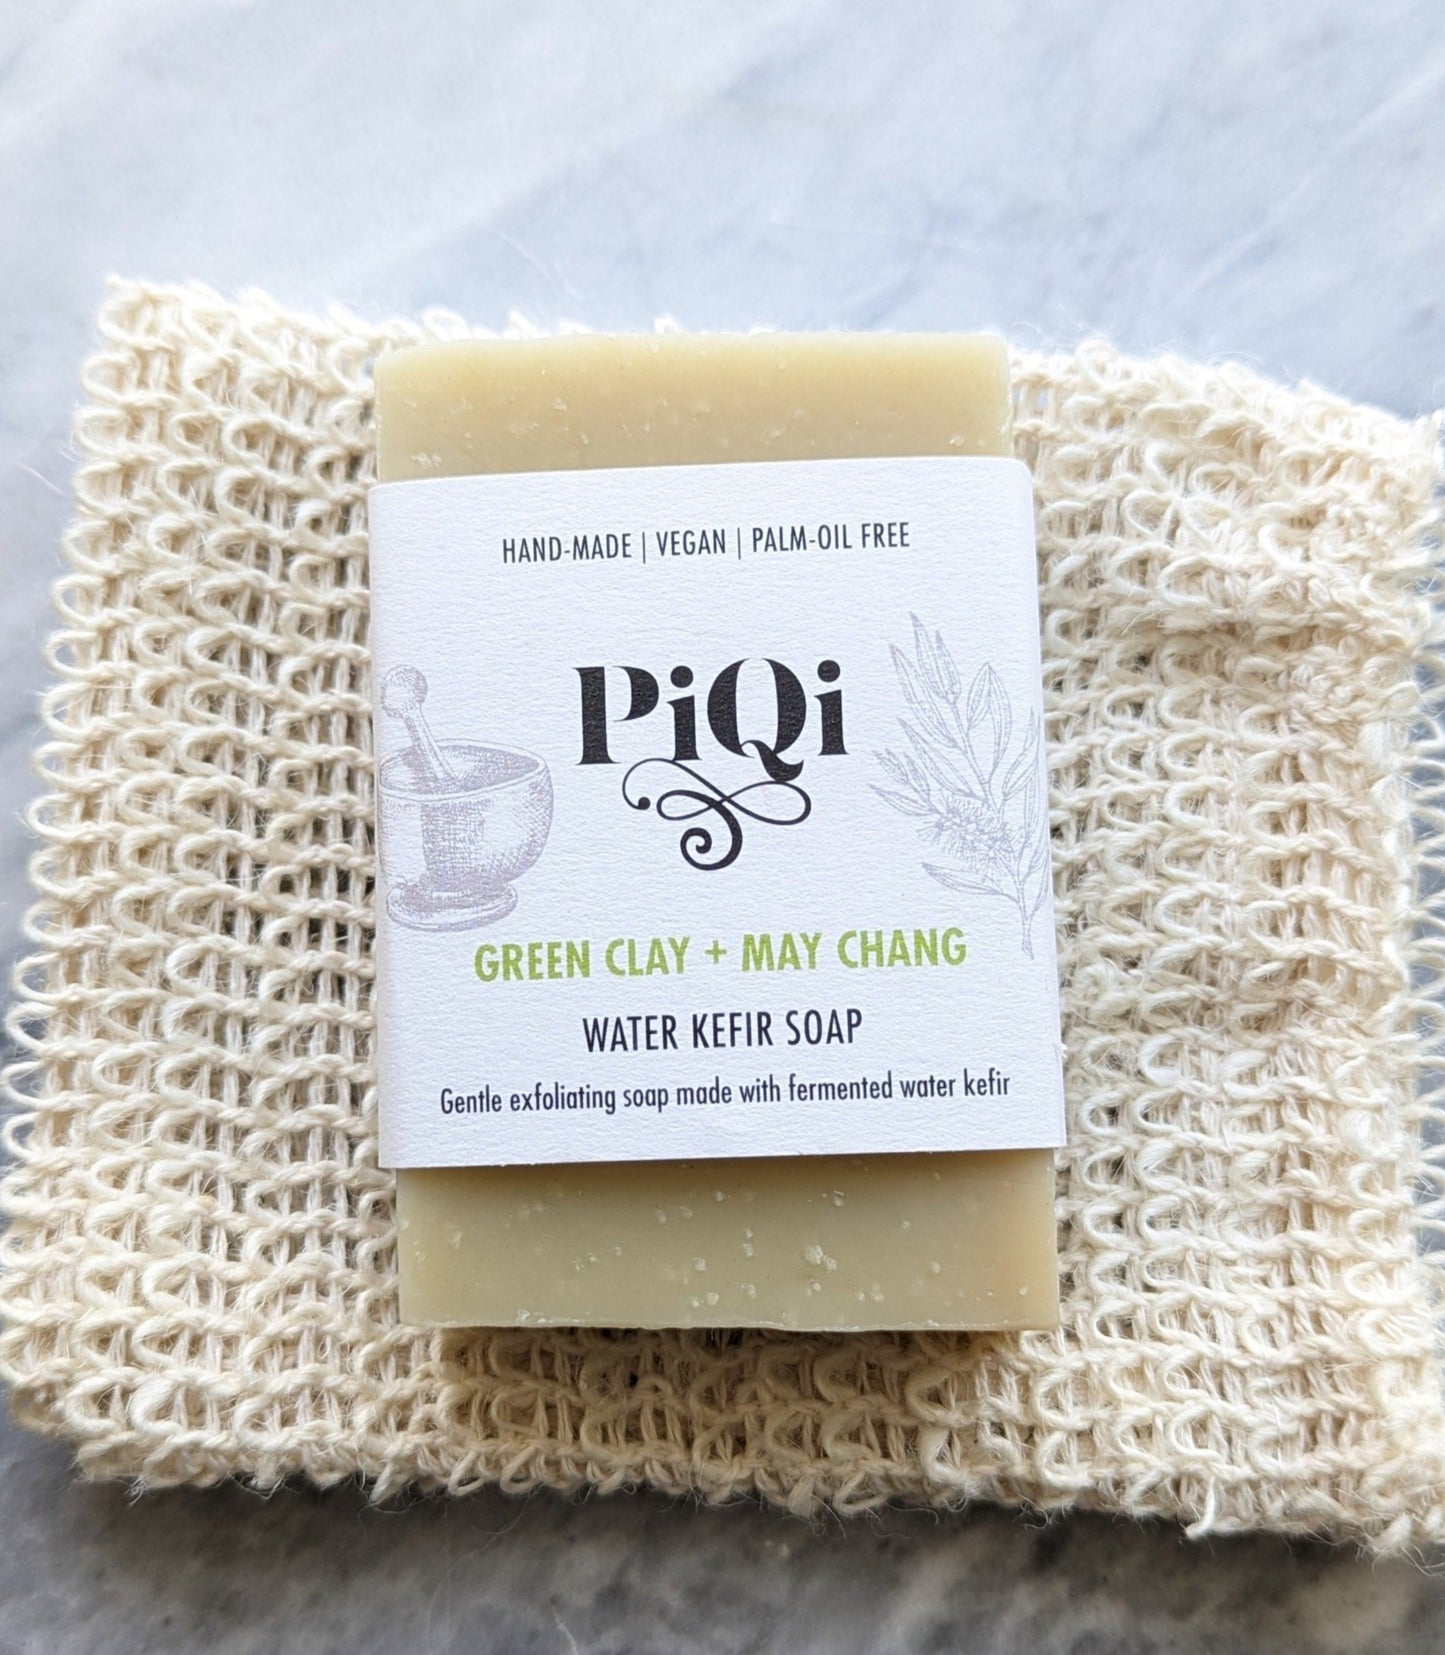 Green Clay + May Chang | Kefir Soap | Vegan, Palm-oil free